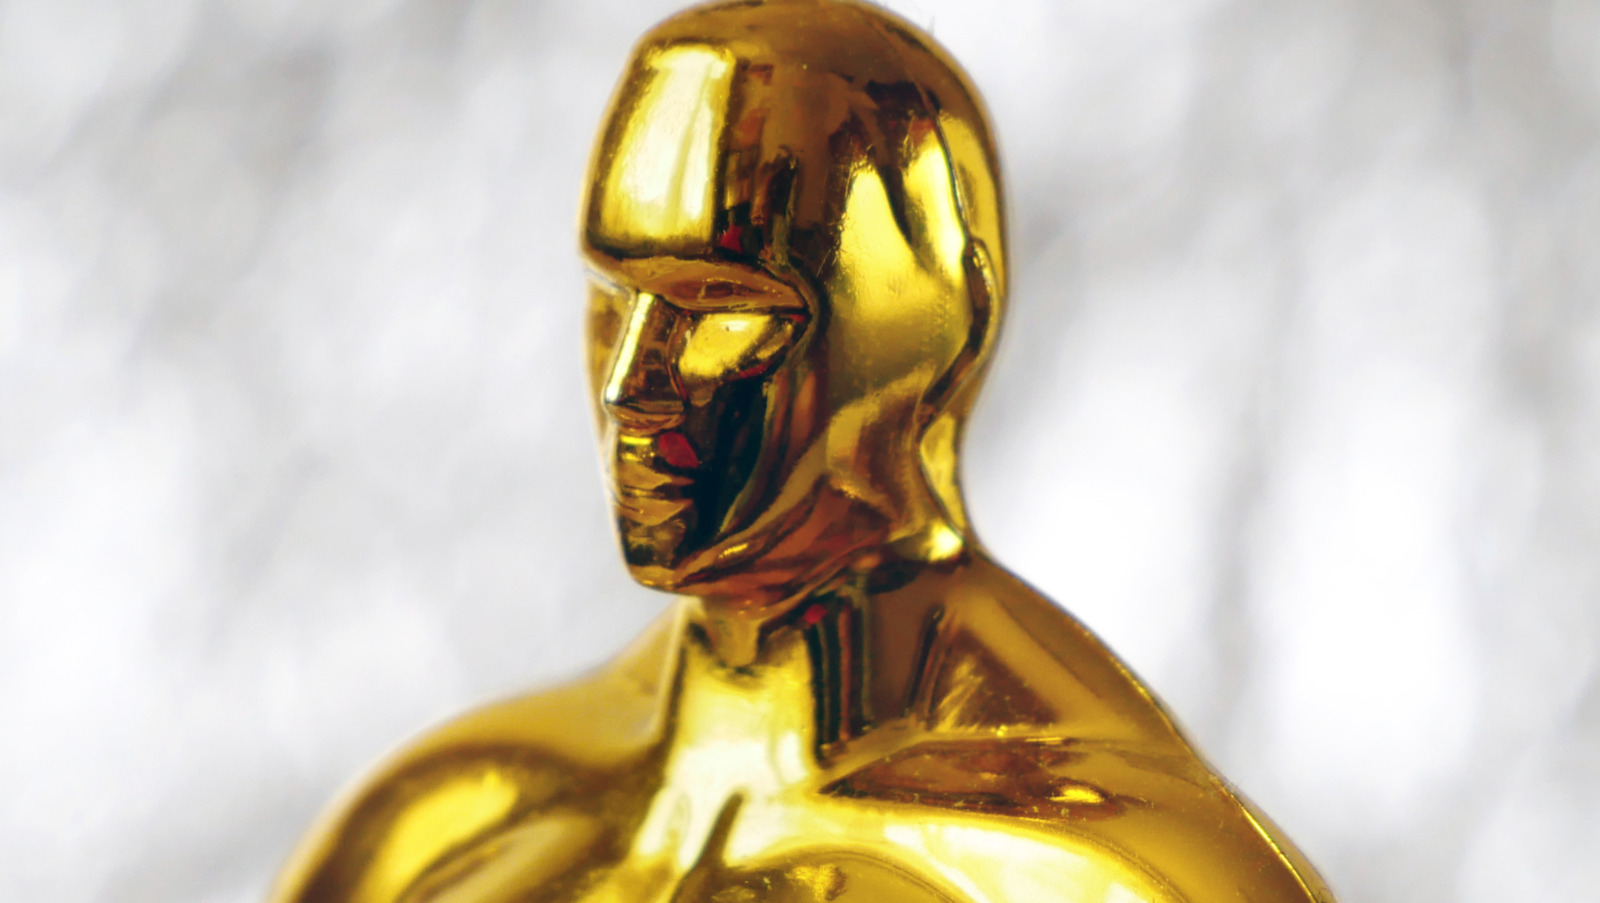 Oscar Predictions 2021 - Nominees 